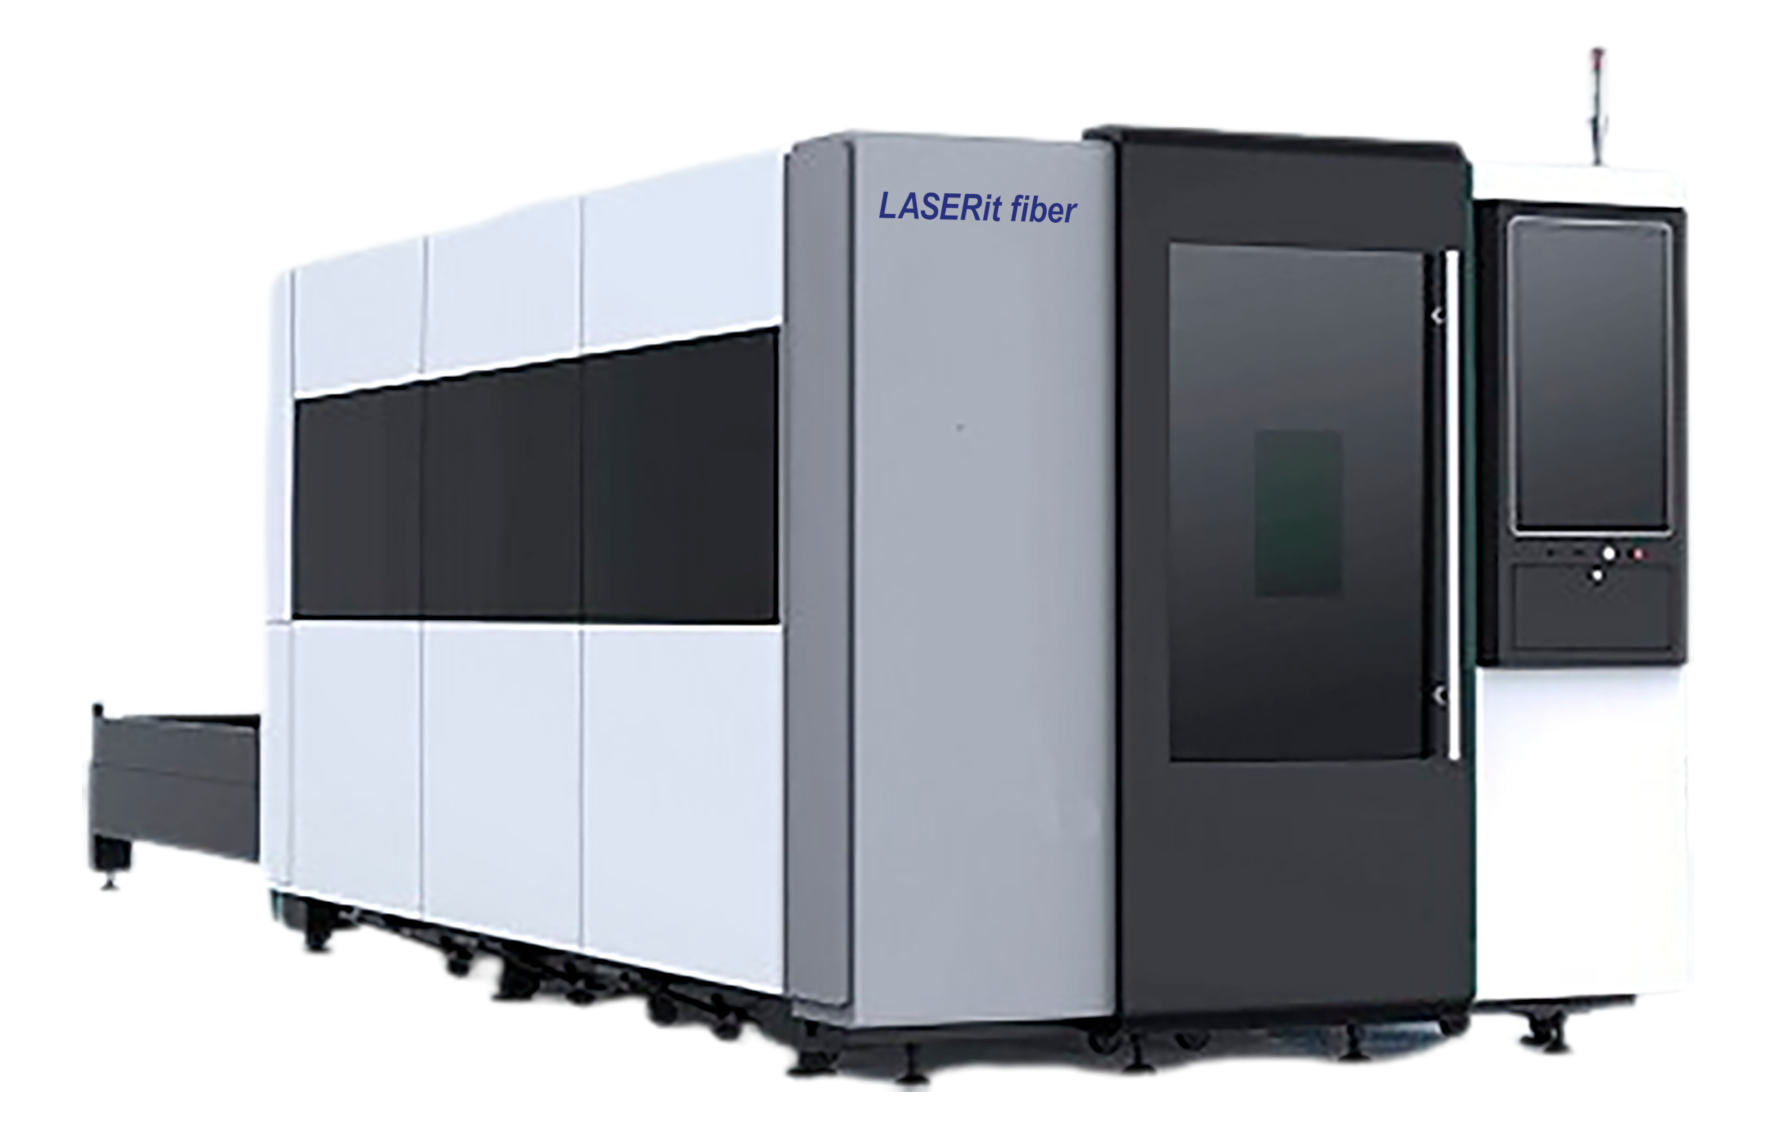 LASERit fiber L kuitulaserleikkauskone vaihtopöydällä on laadukas, nopea ja helppokäyttöinen kuitulaser teollisuuskäyttöön.